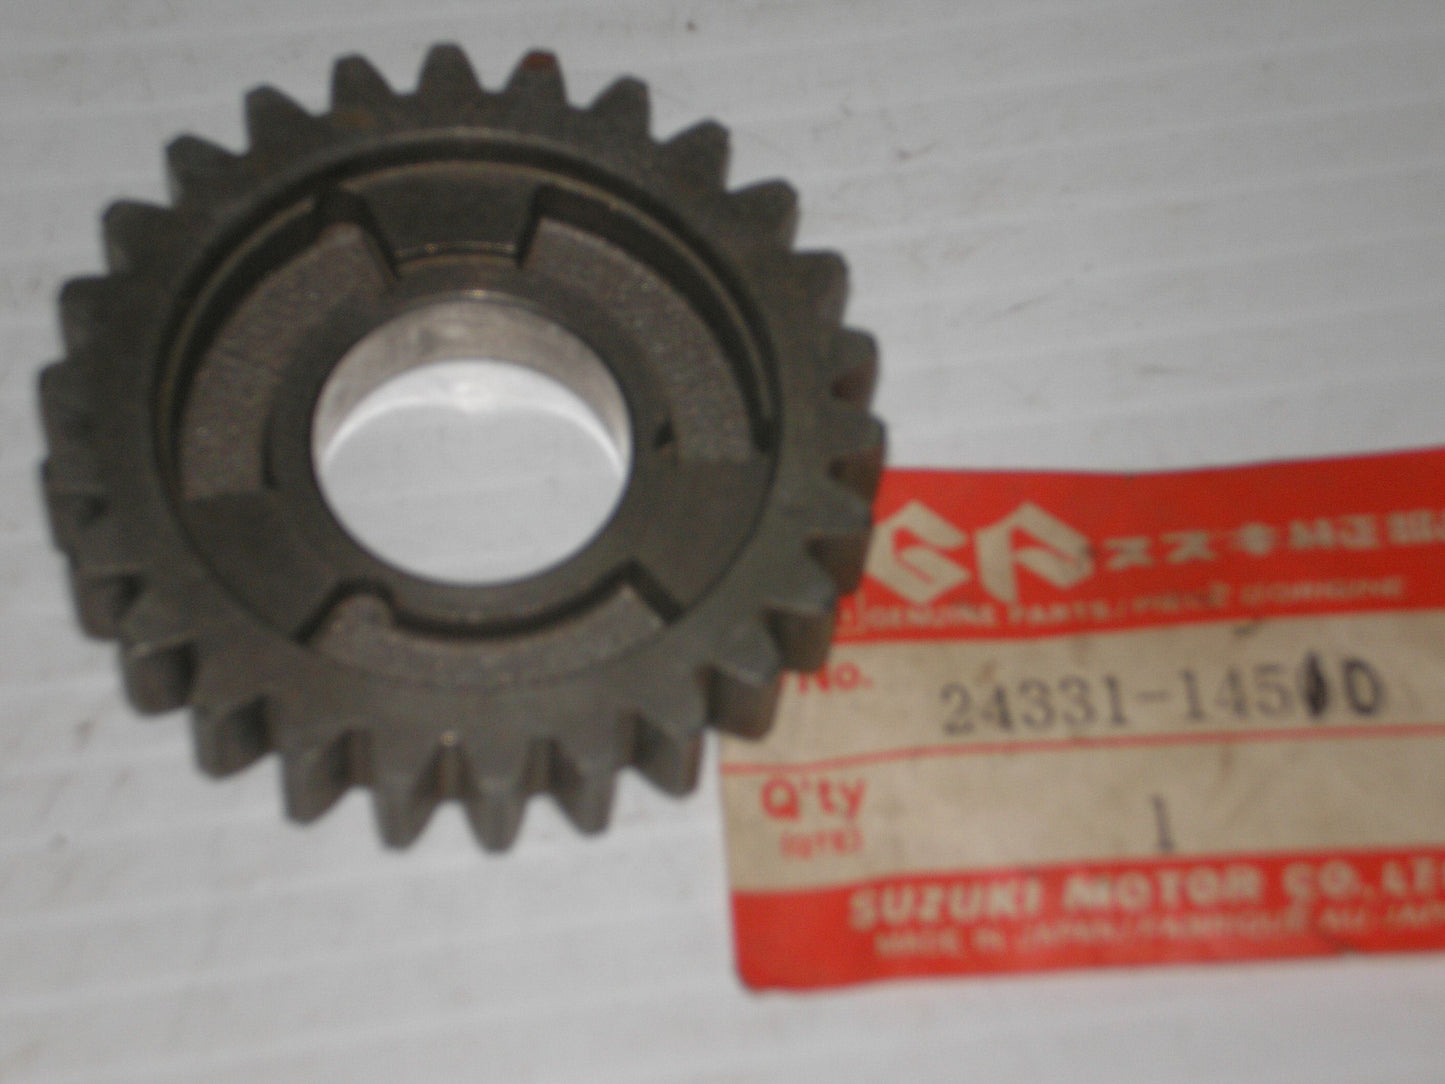 SUZUKI RM125 1985 AHRMA Third Driven Gear 24331-14510